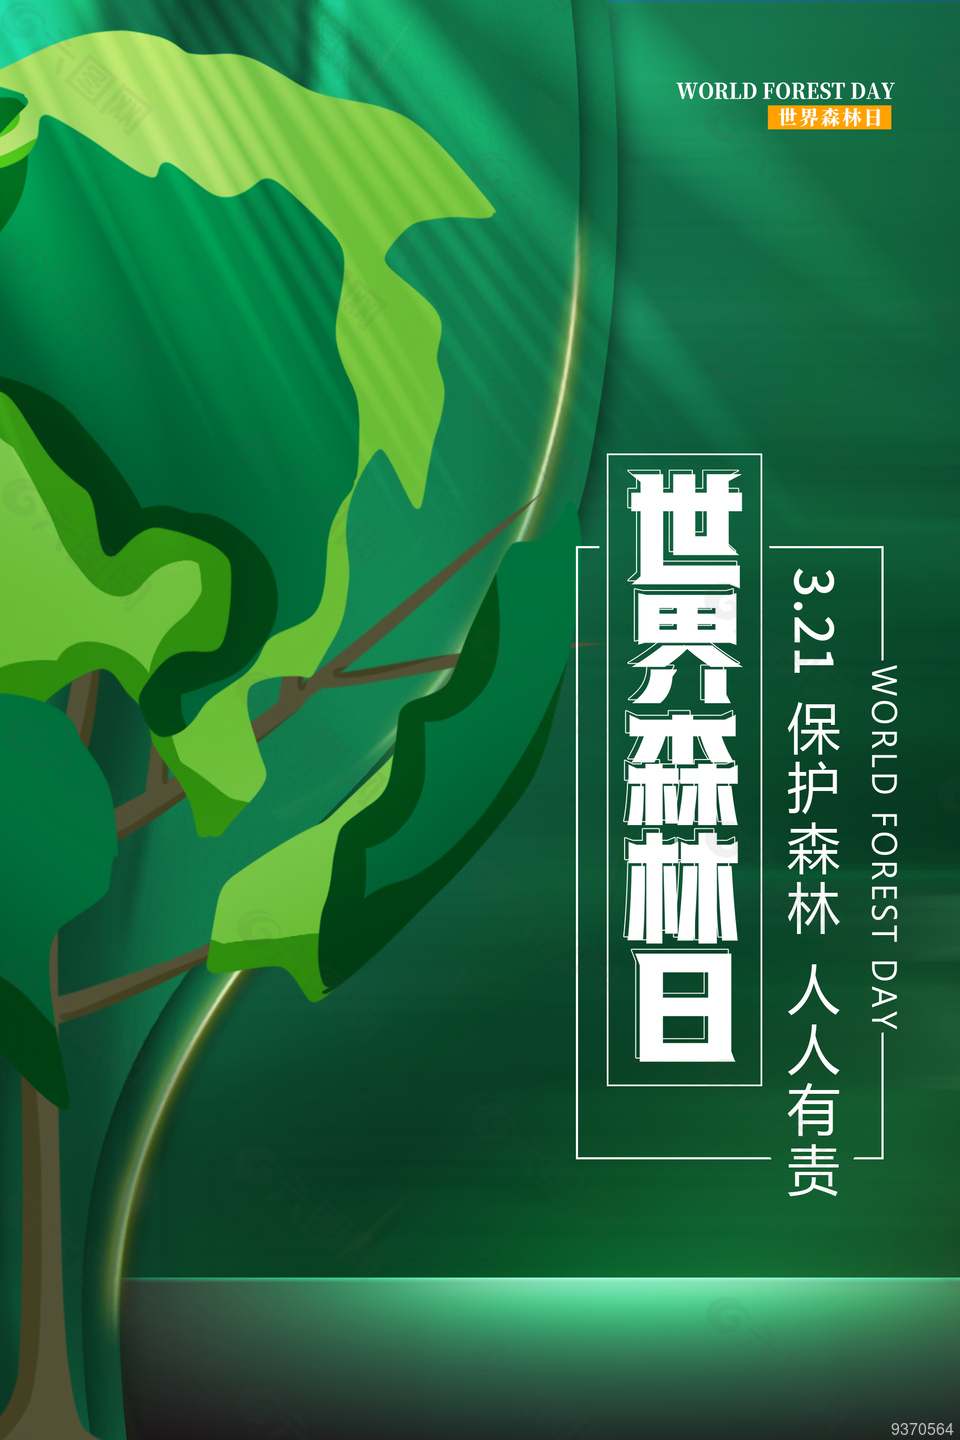 简单世界森林日海报设计